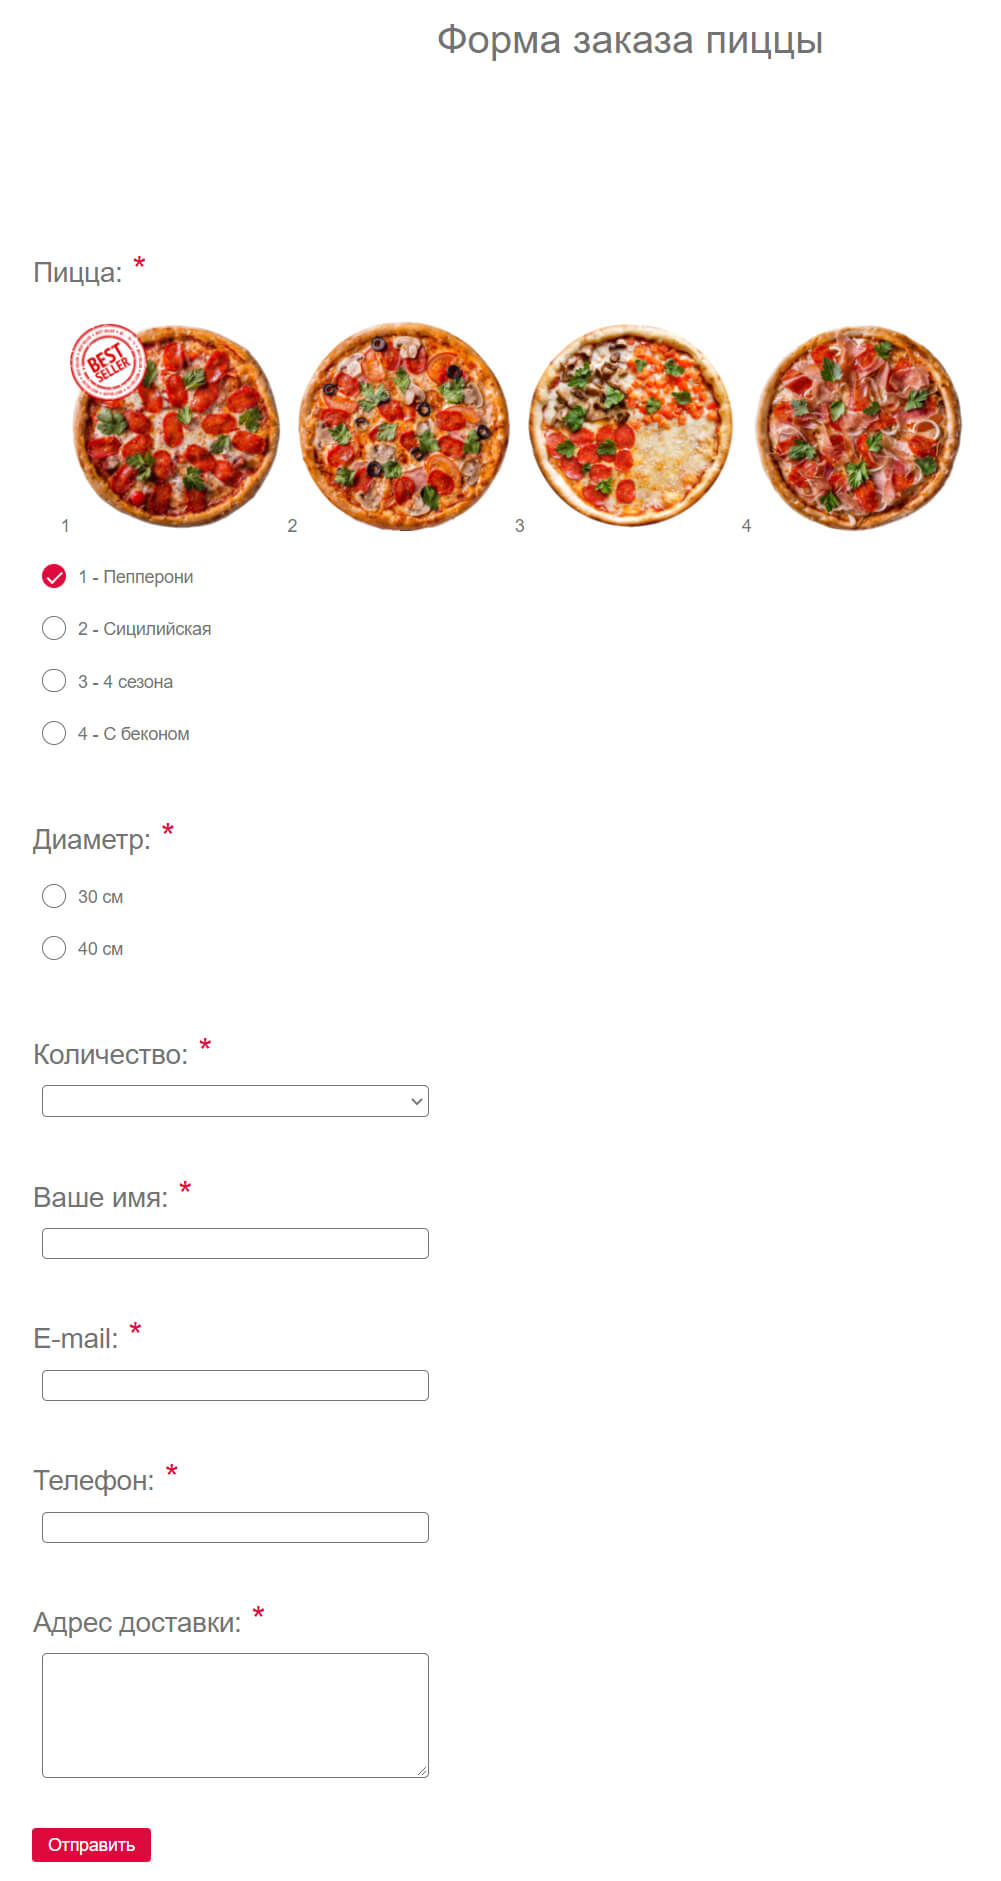 Пример формы заказа пиццы